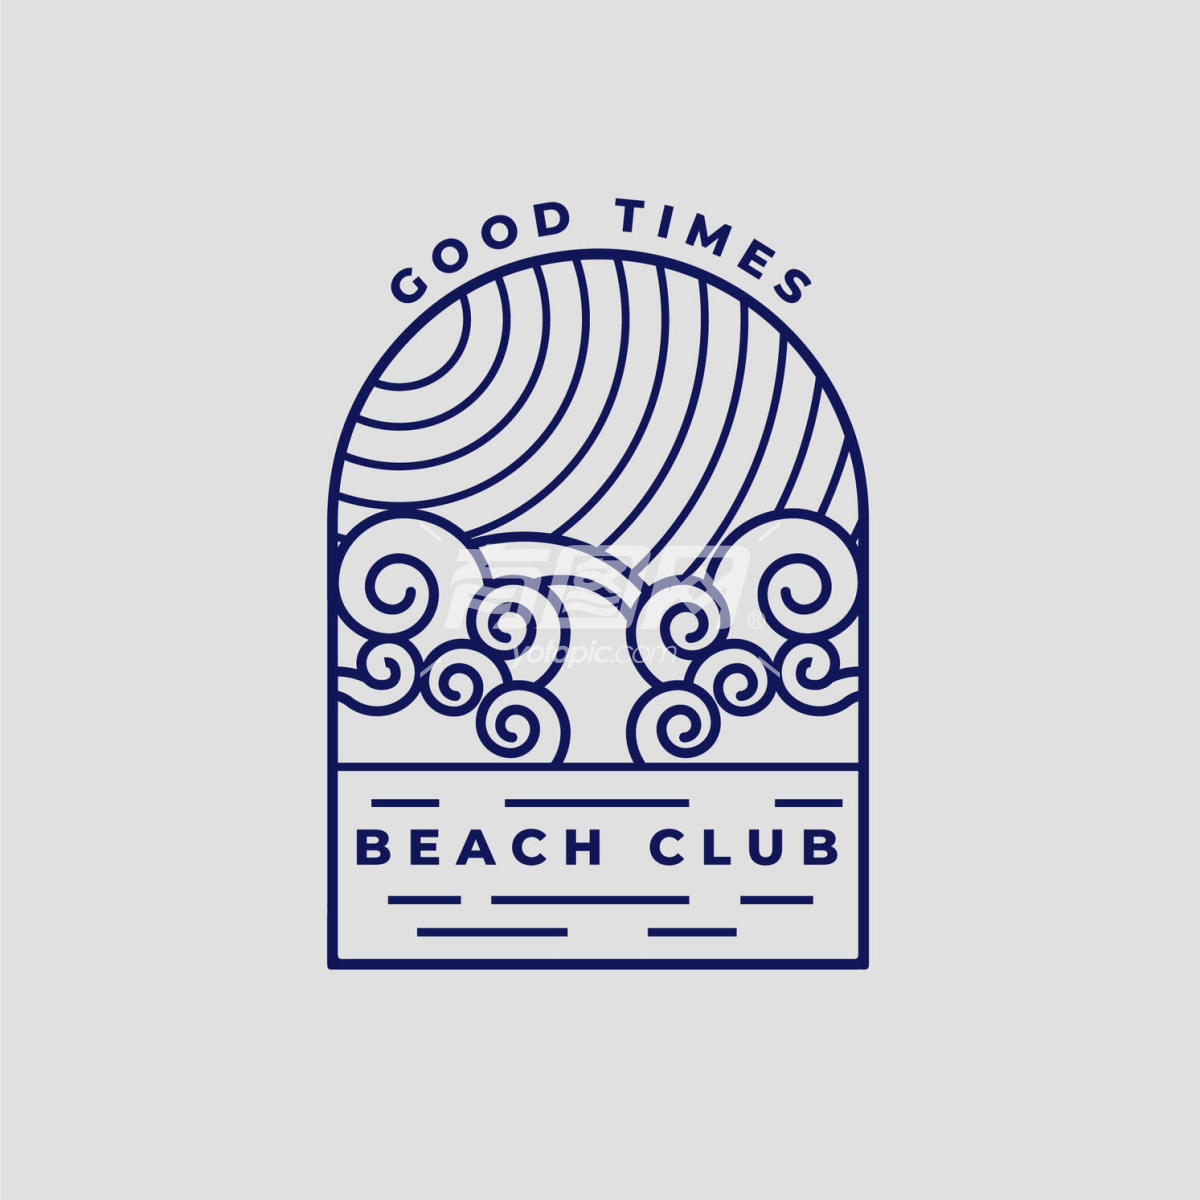 海滩俱乐部标志